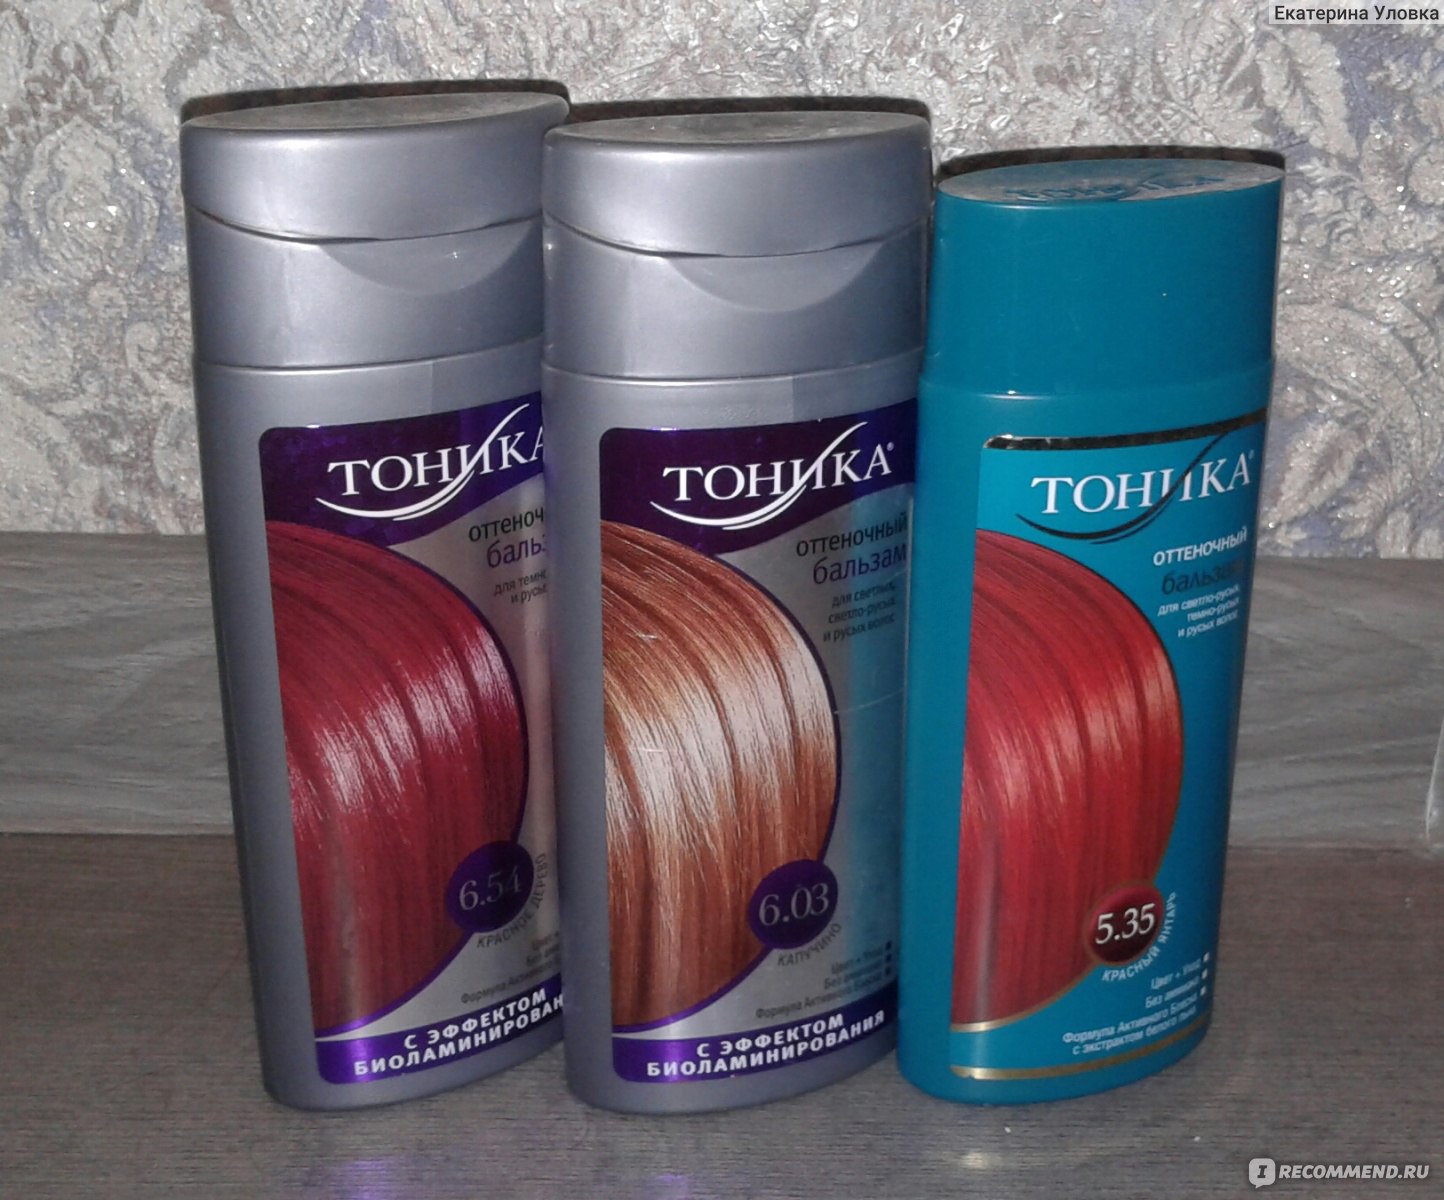 Рыжая Тоника На Русые Волосы